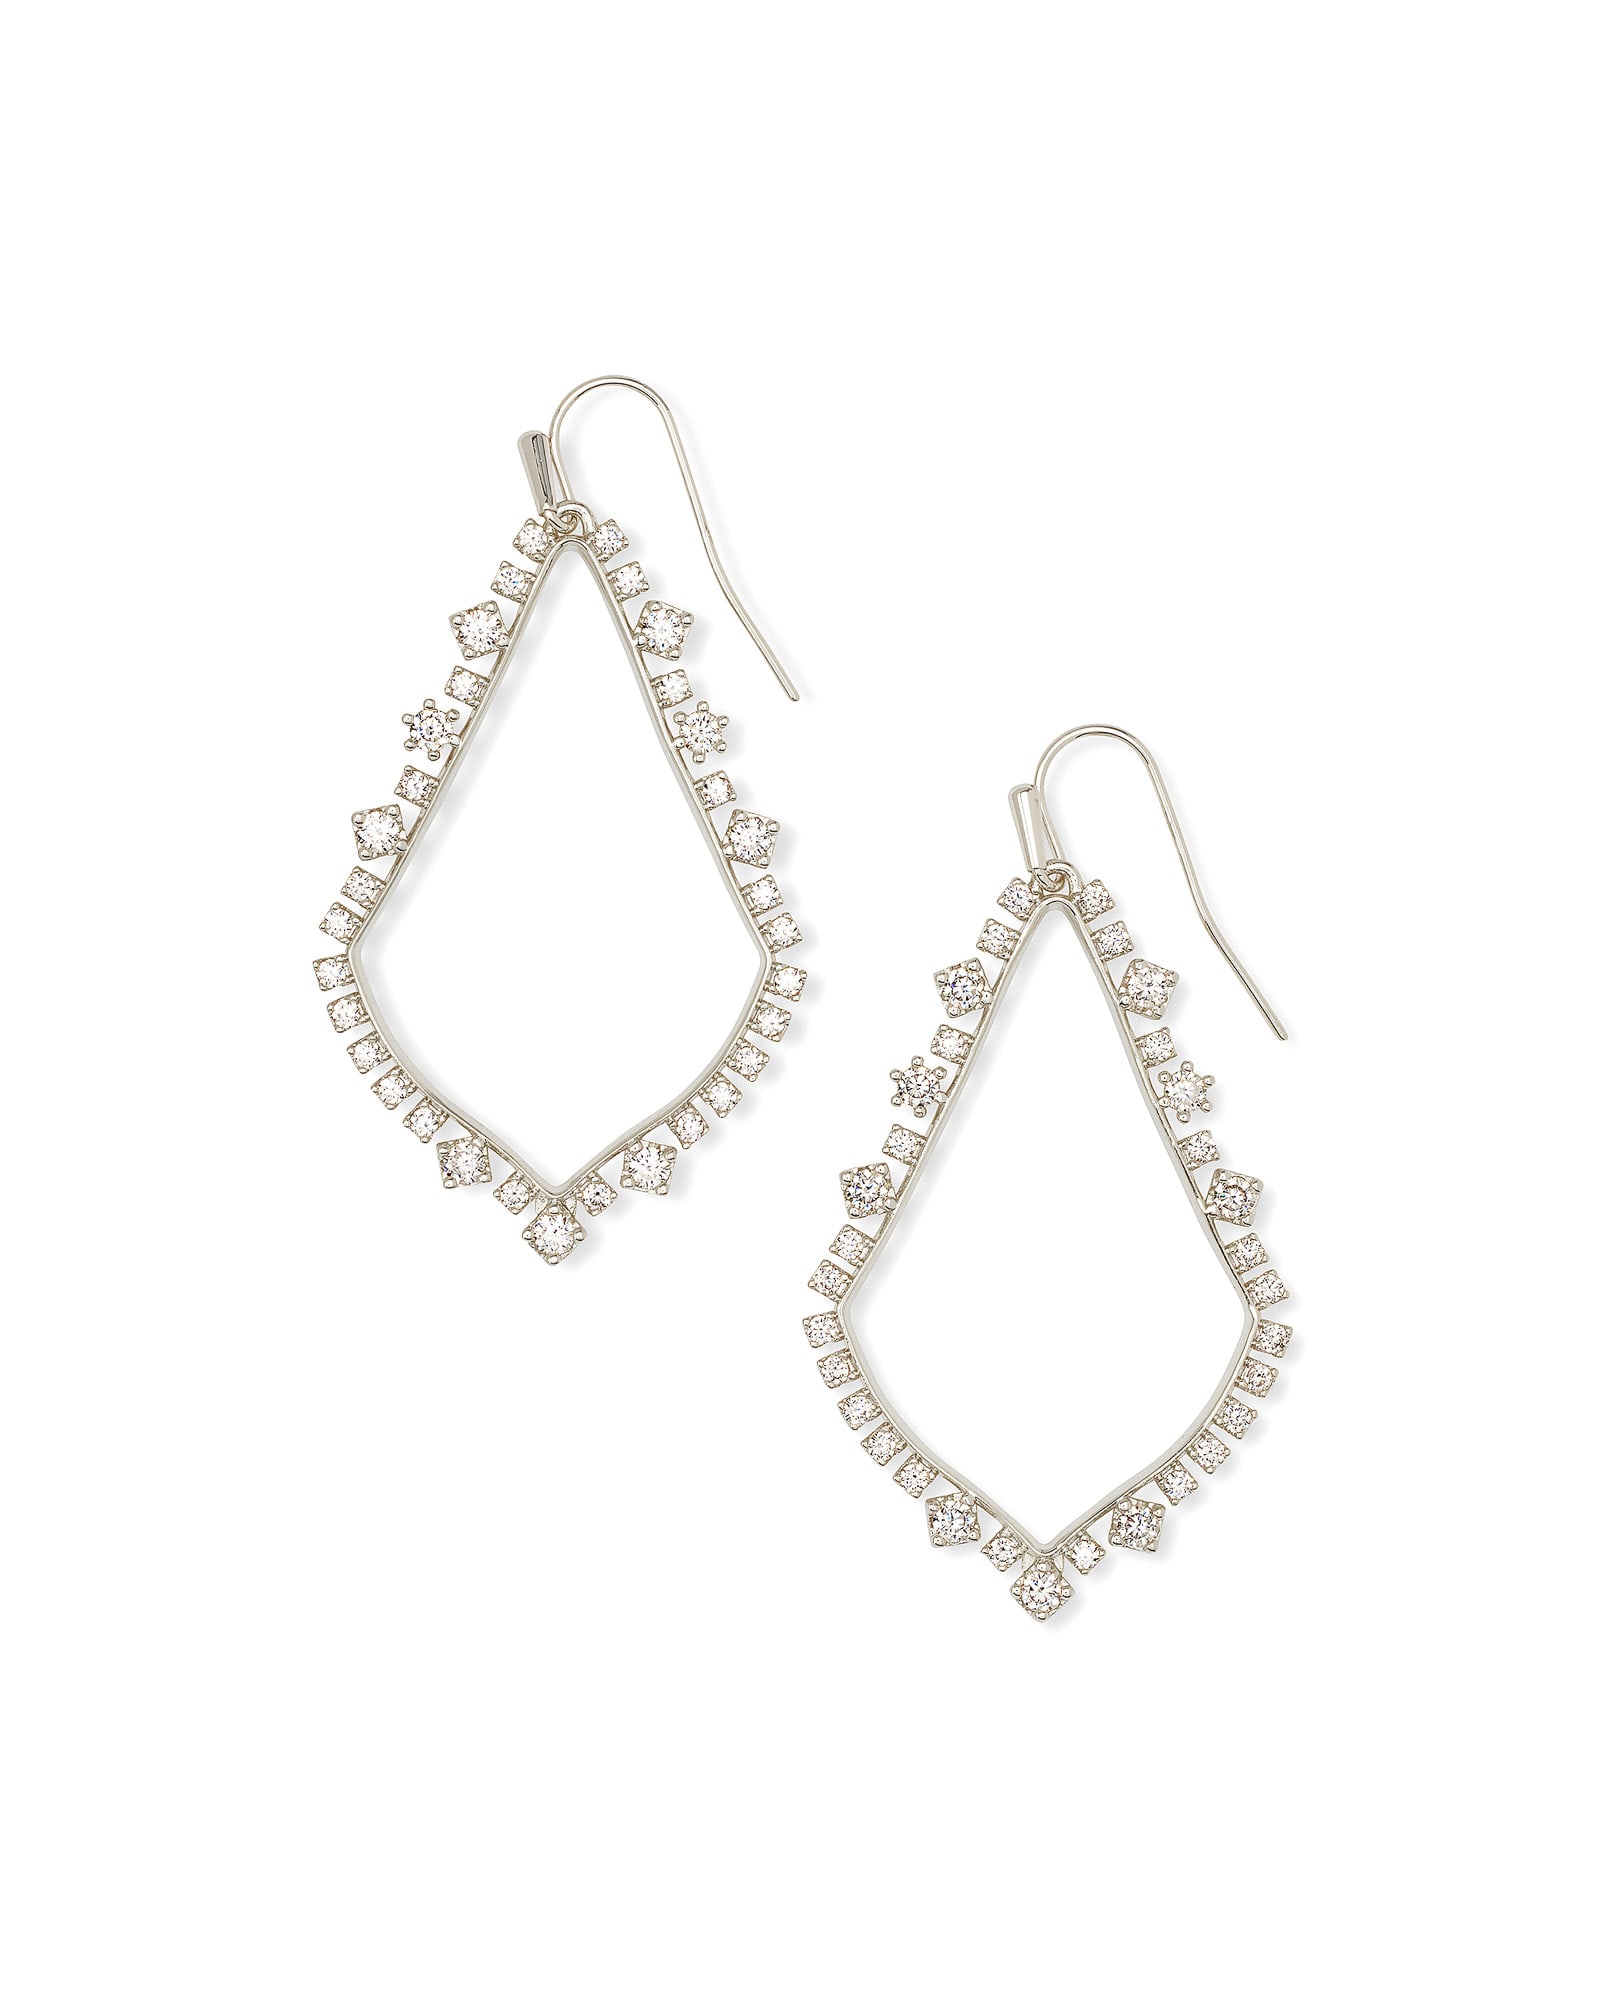 Kendra Scott Sophee Crystal Drop Earrings in Silver | Cubic Zirconia/Metal Rhodium